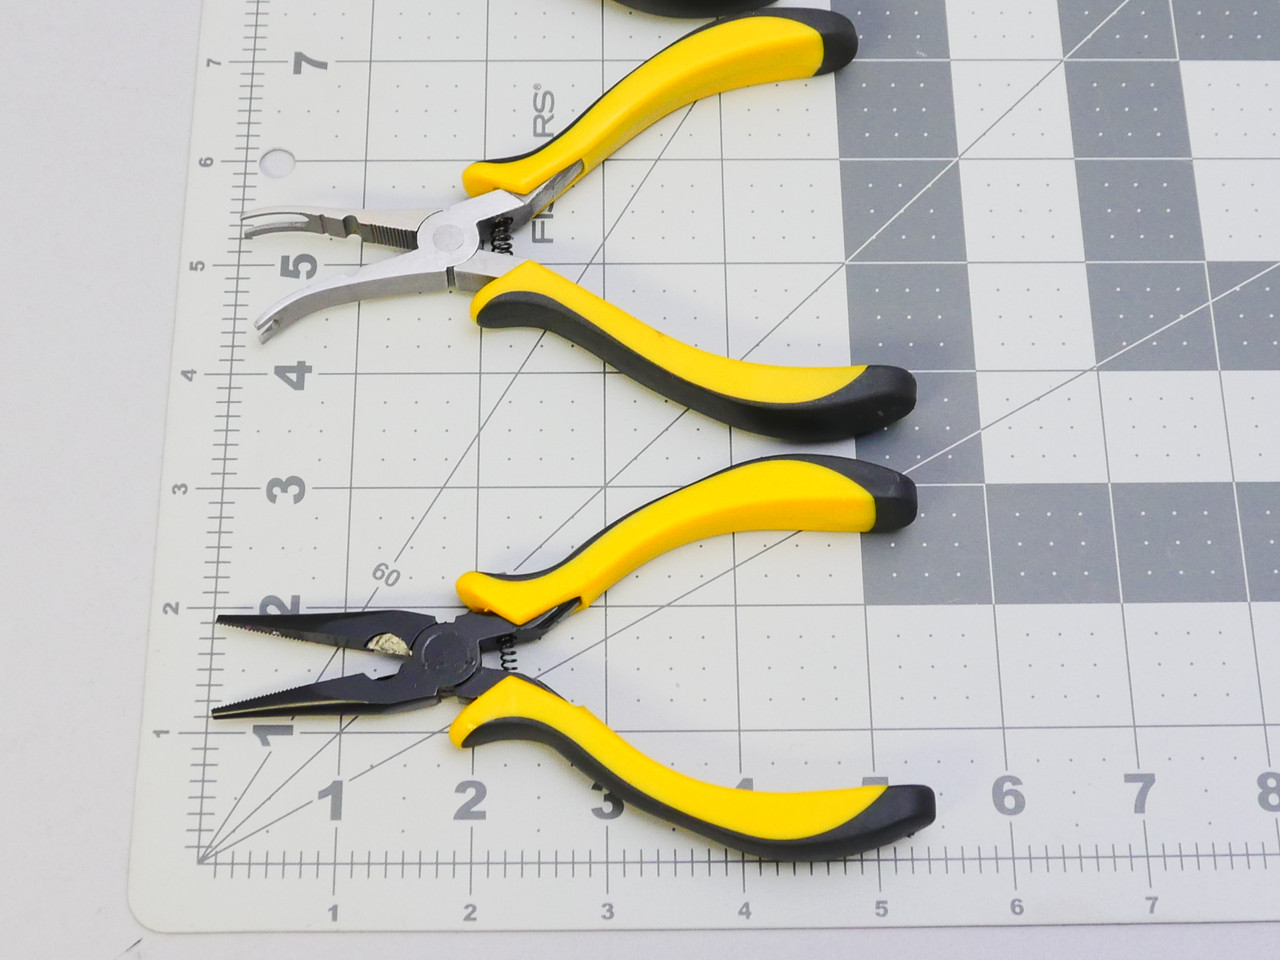 3 PCS Pliers Tool Set, 6' Needle Nose Pliers, 6' Diagonal Cutters